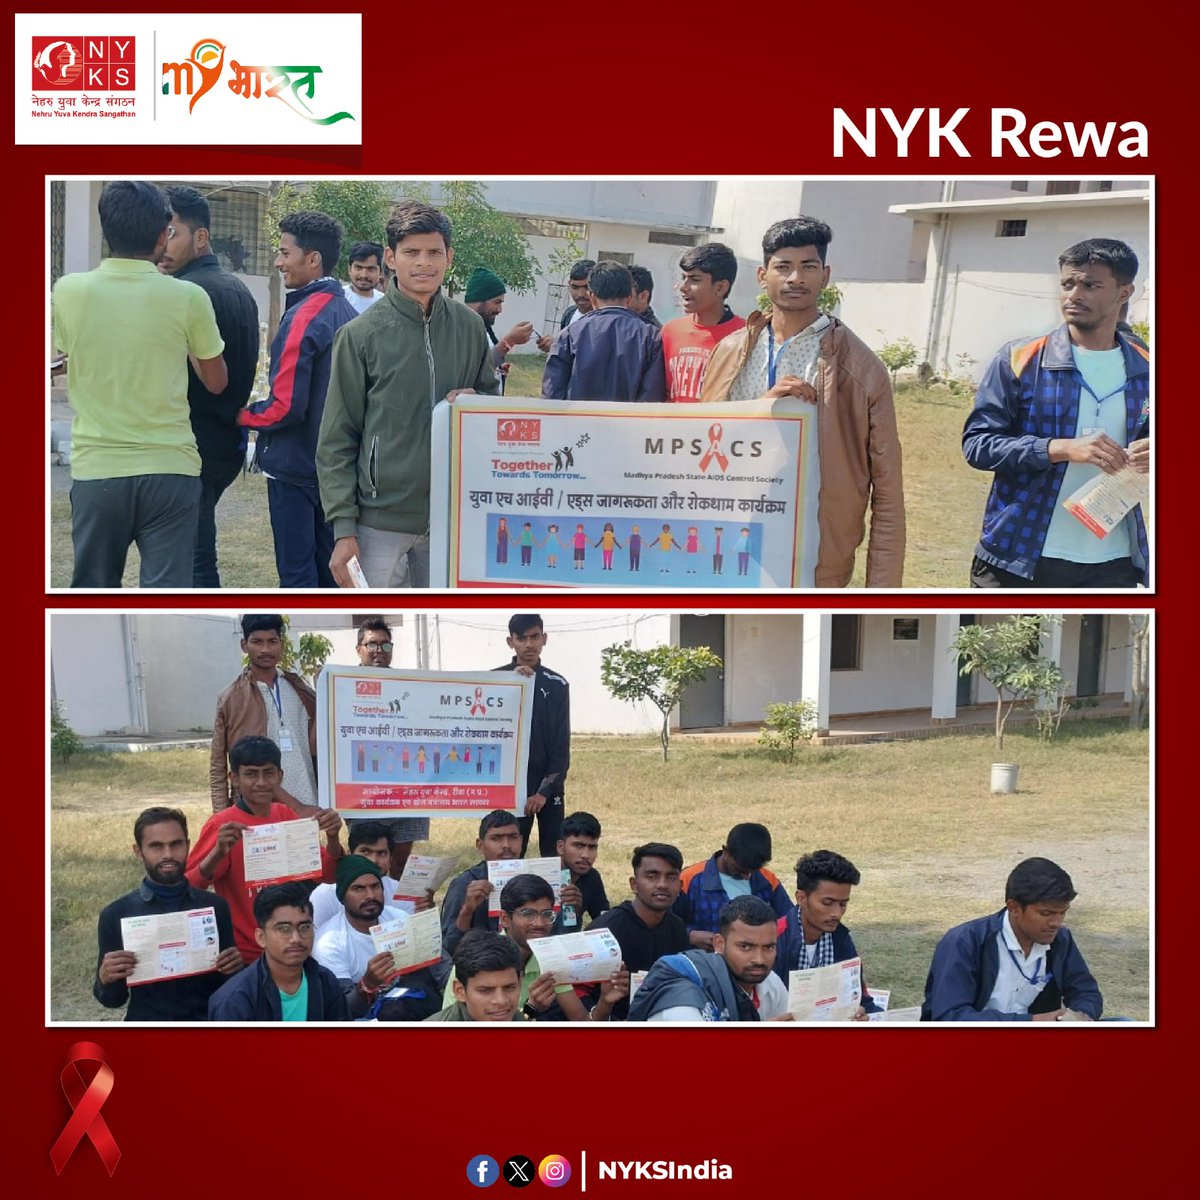 युवाओं के साथ-साथ समाज को जागरूक करने का एक कदम। 

नेहरू युवा केंद्र रीवा से संबद्ध युवा मंडल द्वारा तेयोंथर ब्लॉक में युवा एचआईवी/ एड्स जागरूकता और रोकथाम कार्यक्रम का आयोजन किया गया। 

#AIDSAwareness #NYKS #Youth #HIV #MadhyaPradesh